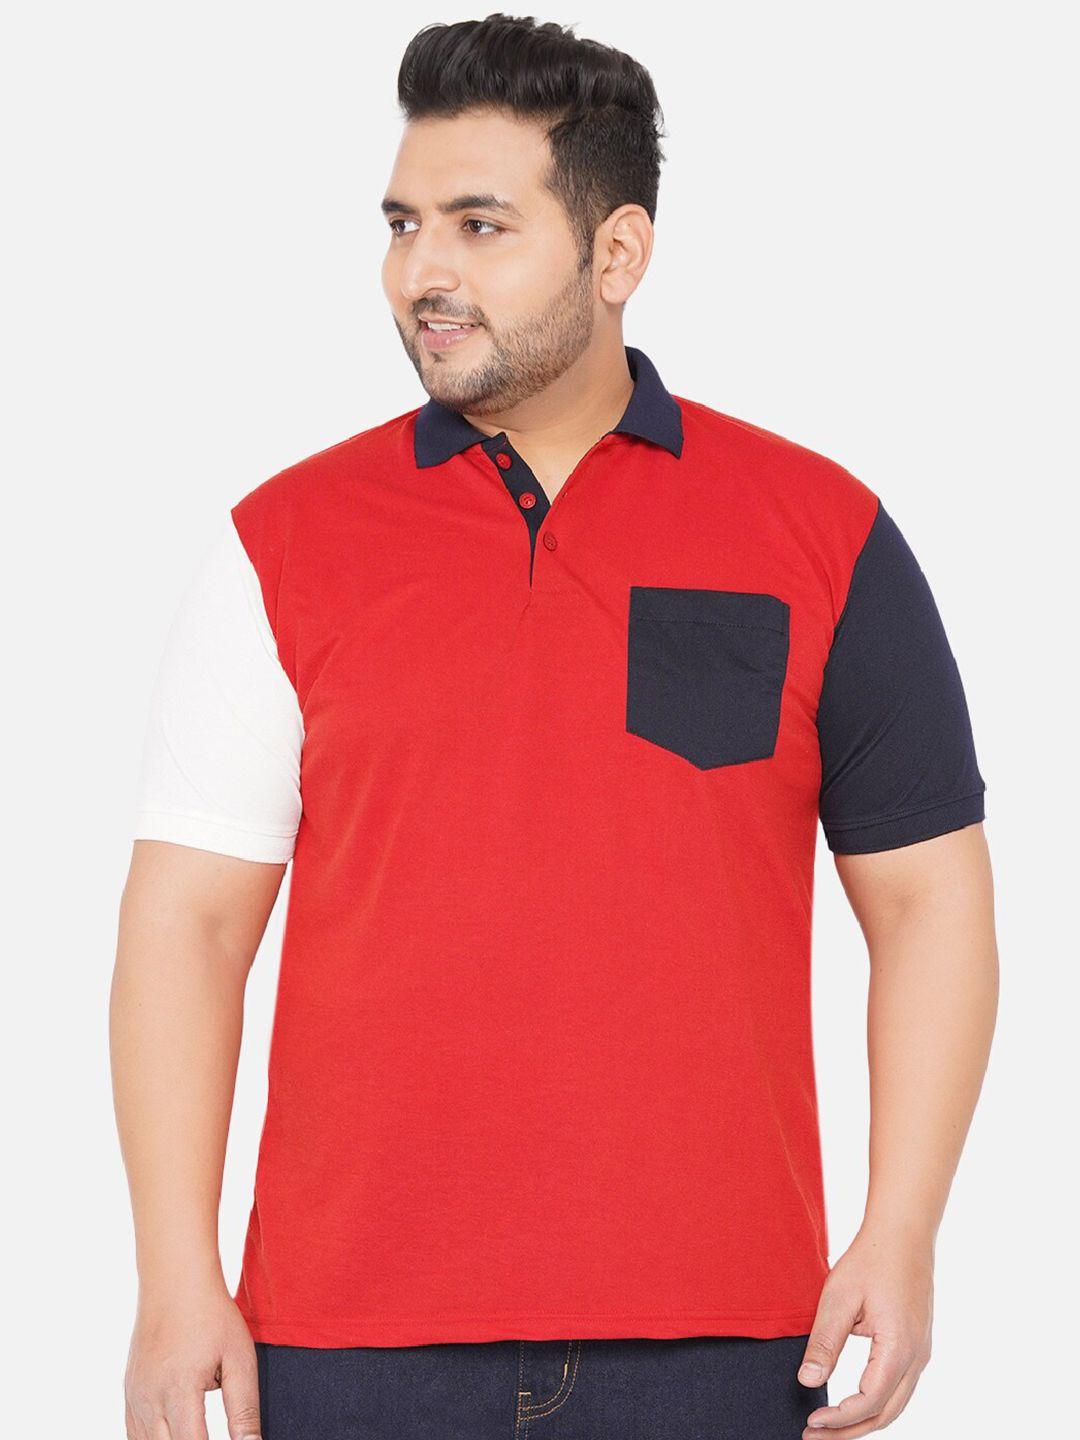 john pride plus size men red & black colourblocked polo collar t-shirt